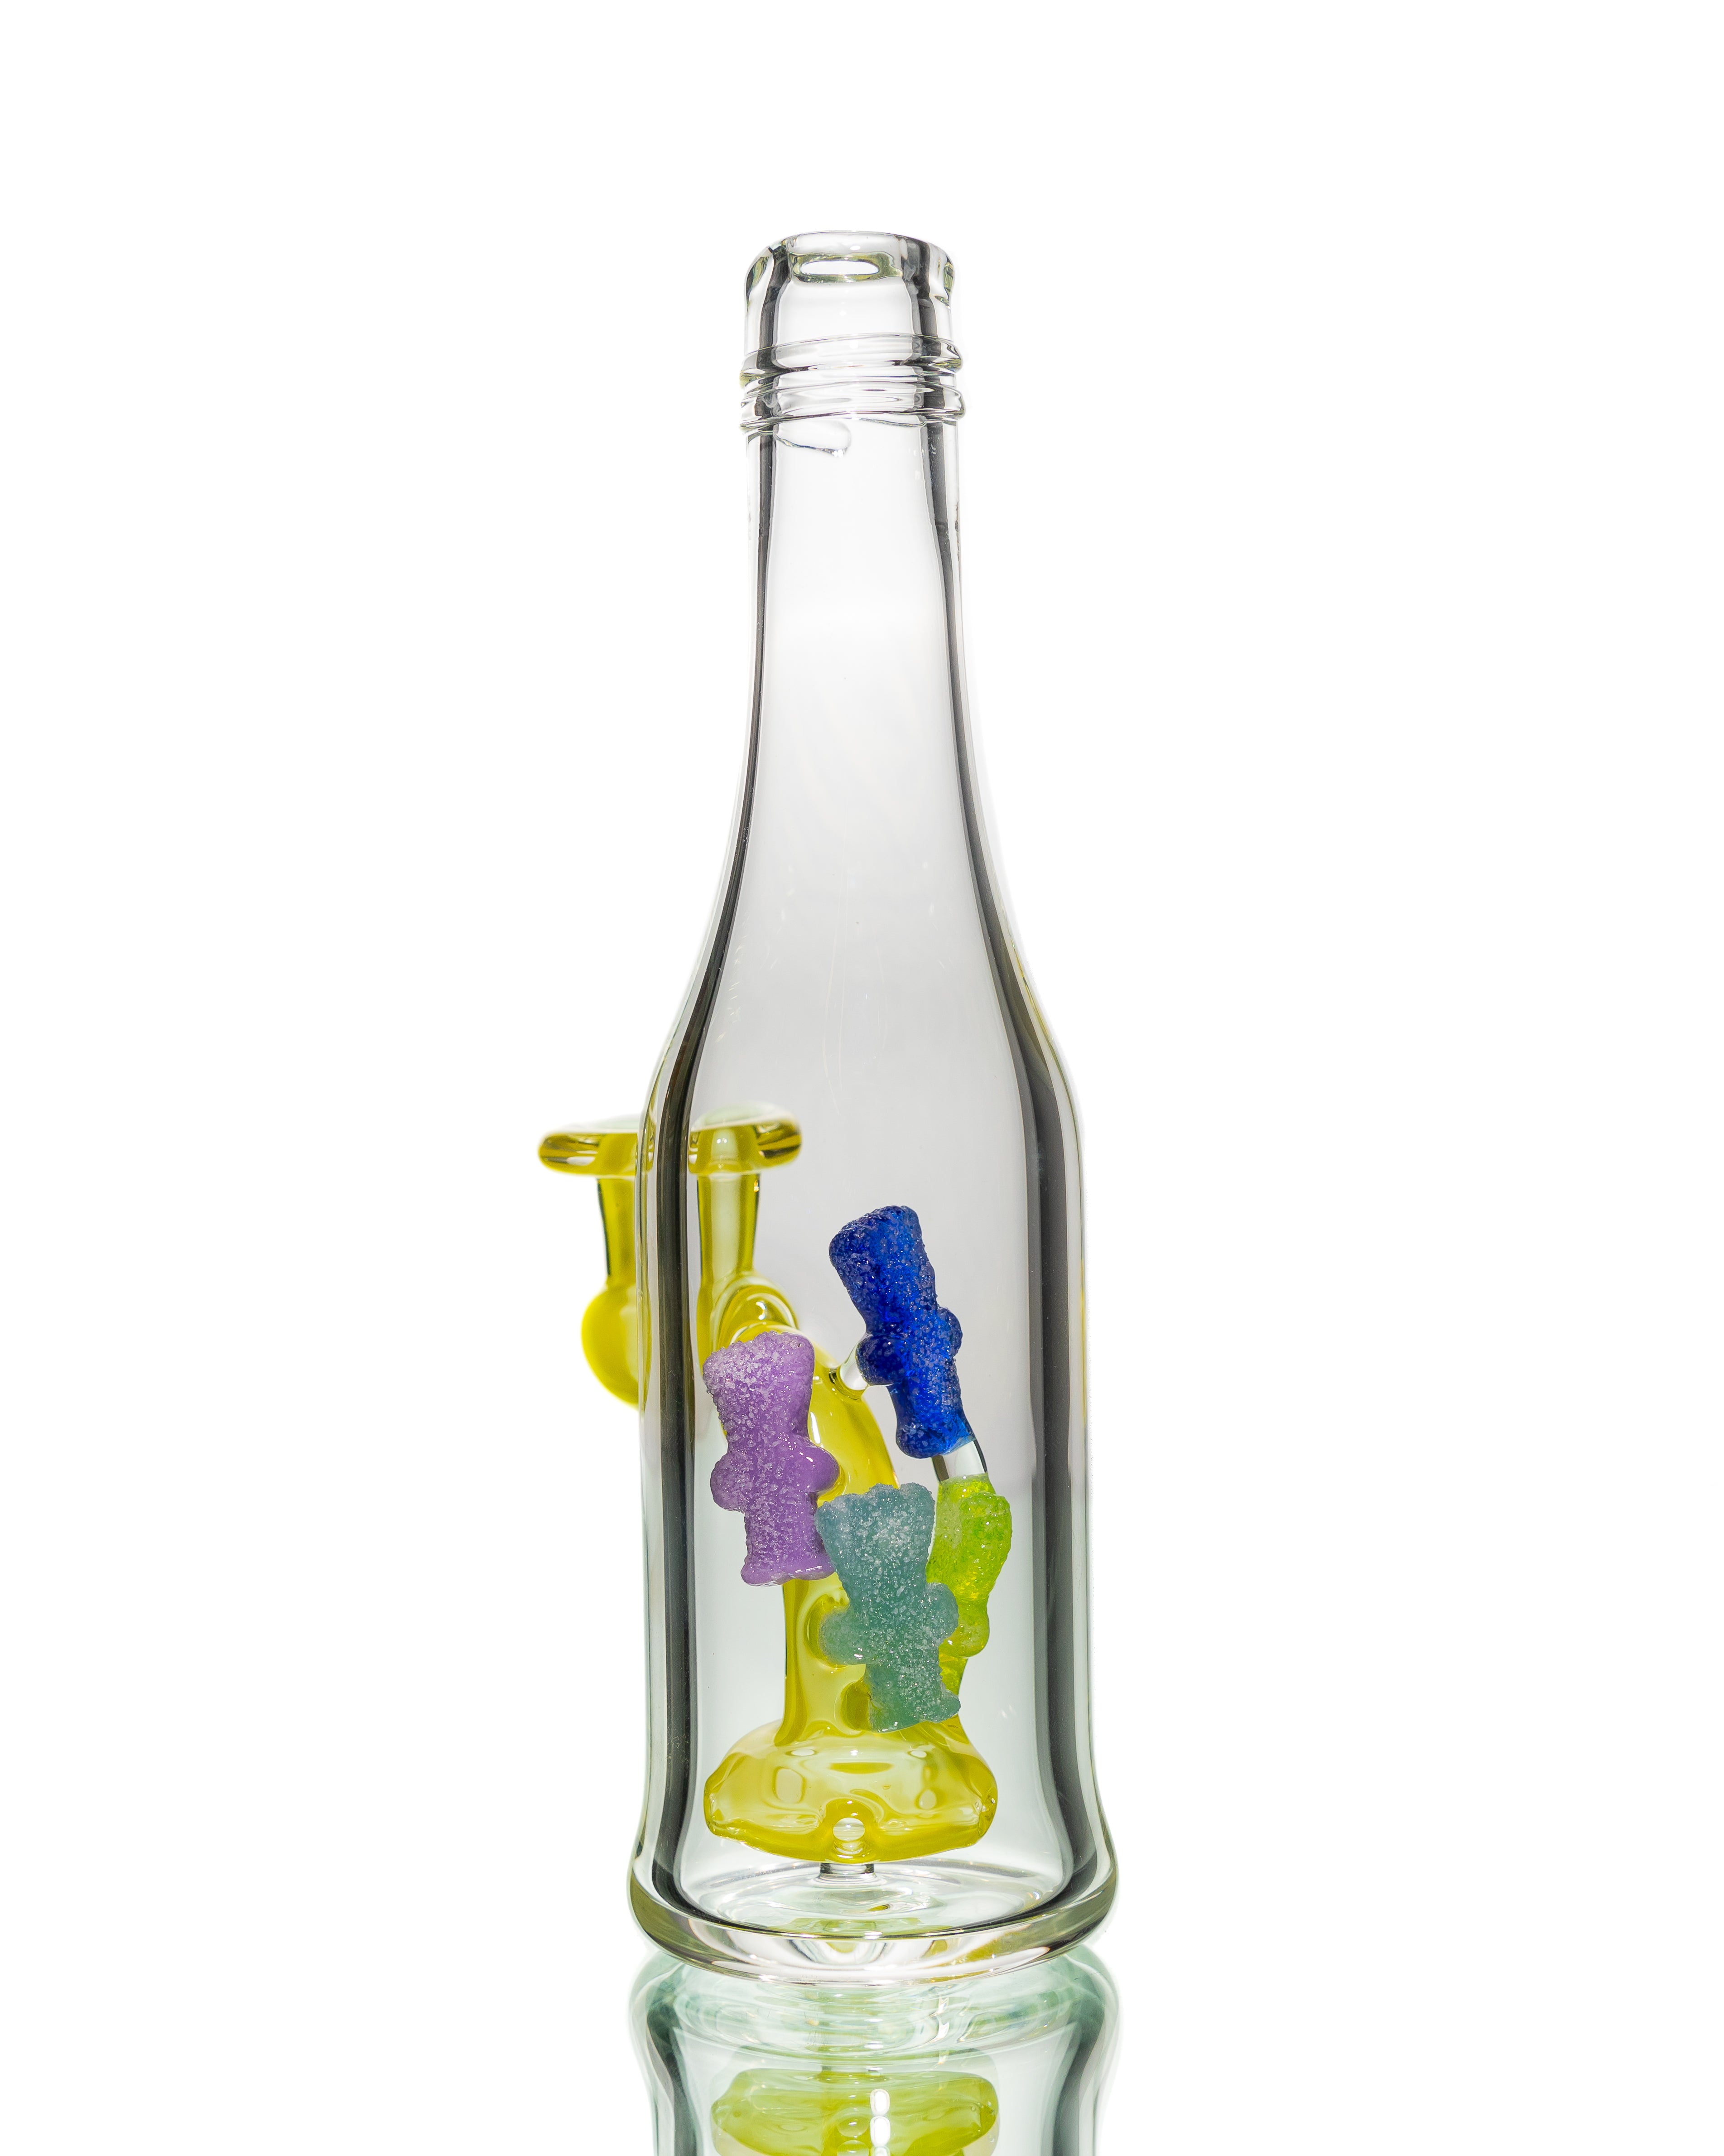 Emperial Glass - Lemon Drop Sour Patch Kids Bottle Rig